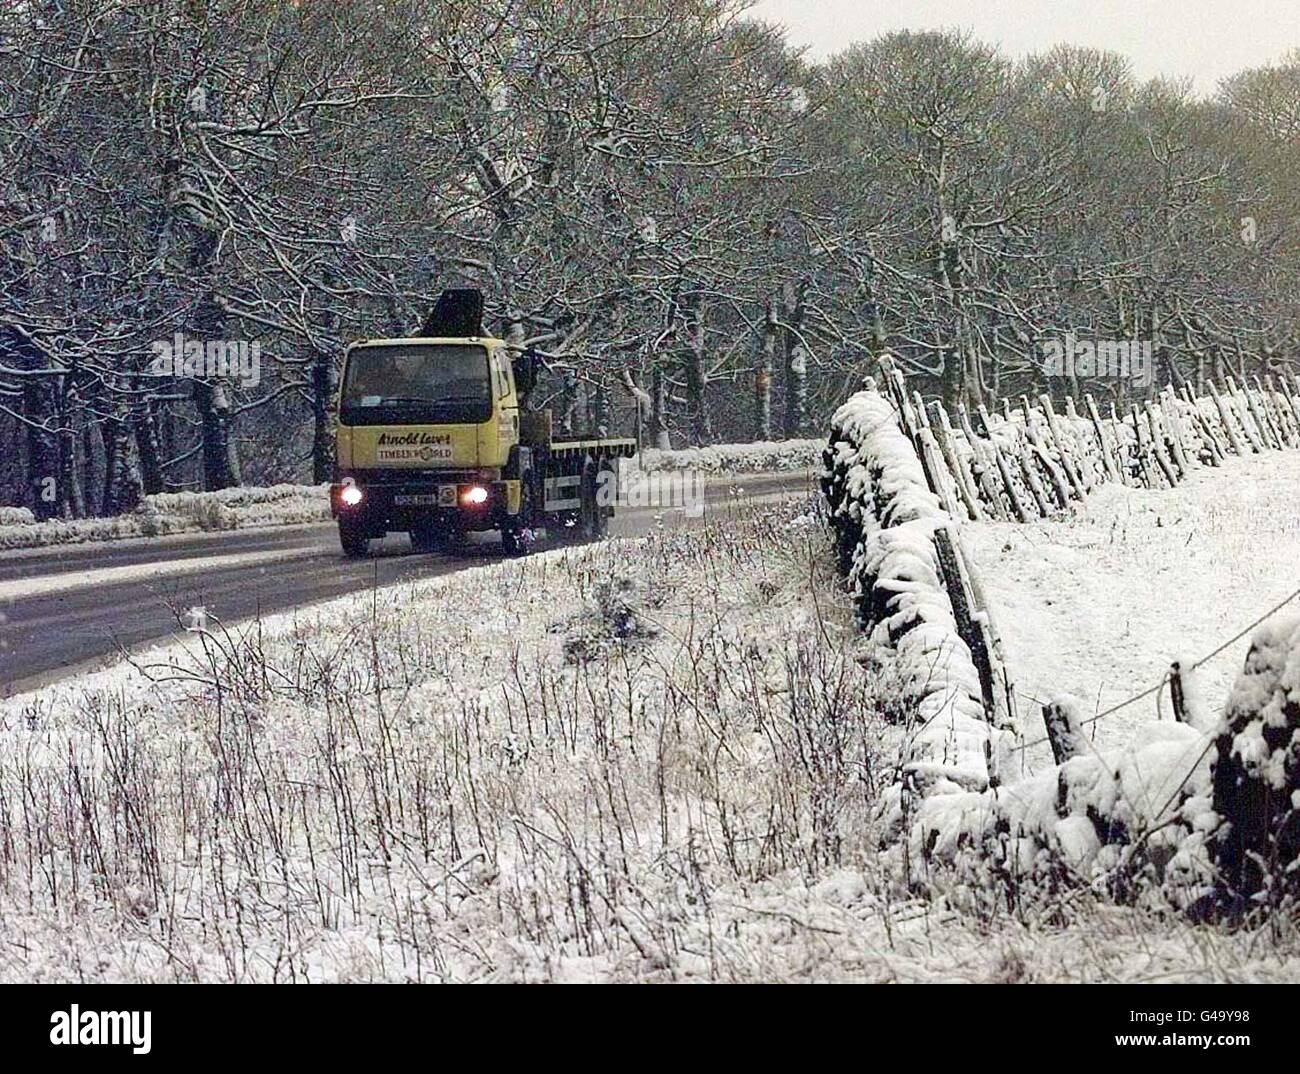 Après les gales et la pluie, la neige tombait dans le Peak District de Derbyshire aujourd'hui (lundi) rendant les routes difficiles à nouveau pour les conducteurs. Voir l'histoire de PA TEMPÊTES MÉTÉOROLOGIQUES. Photo John Giles/PA. Banque D'Images